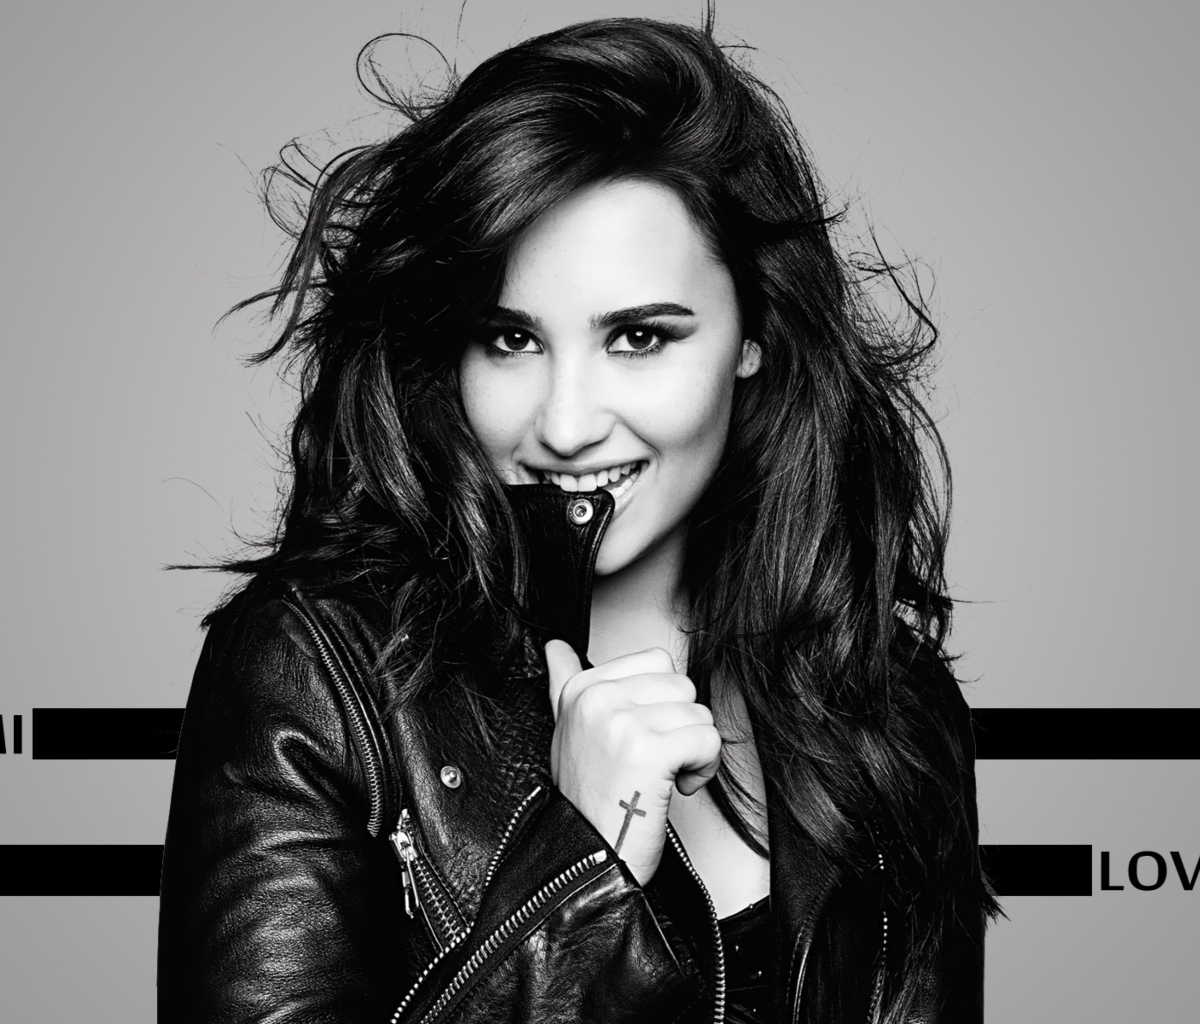 Das Demi Lovato Girlfriend 2013 Wallpaper 1200x1024